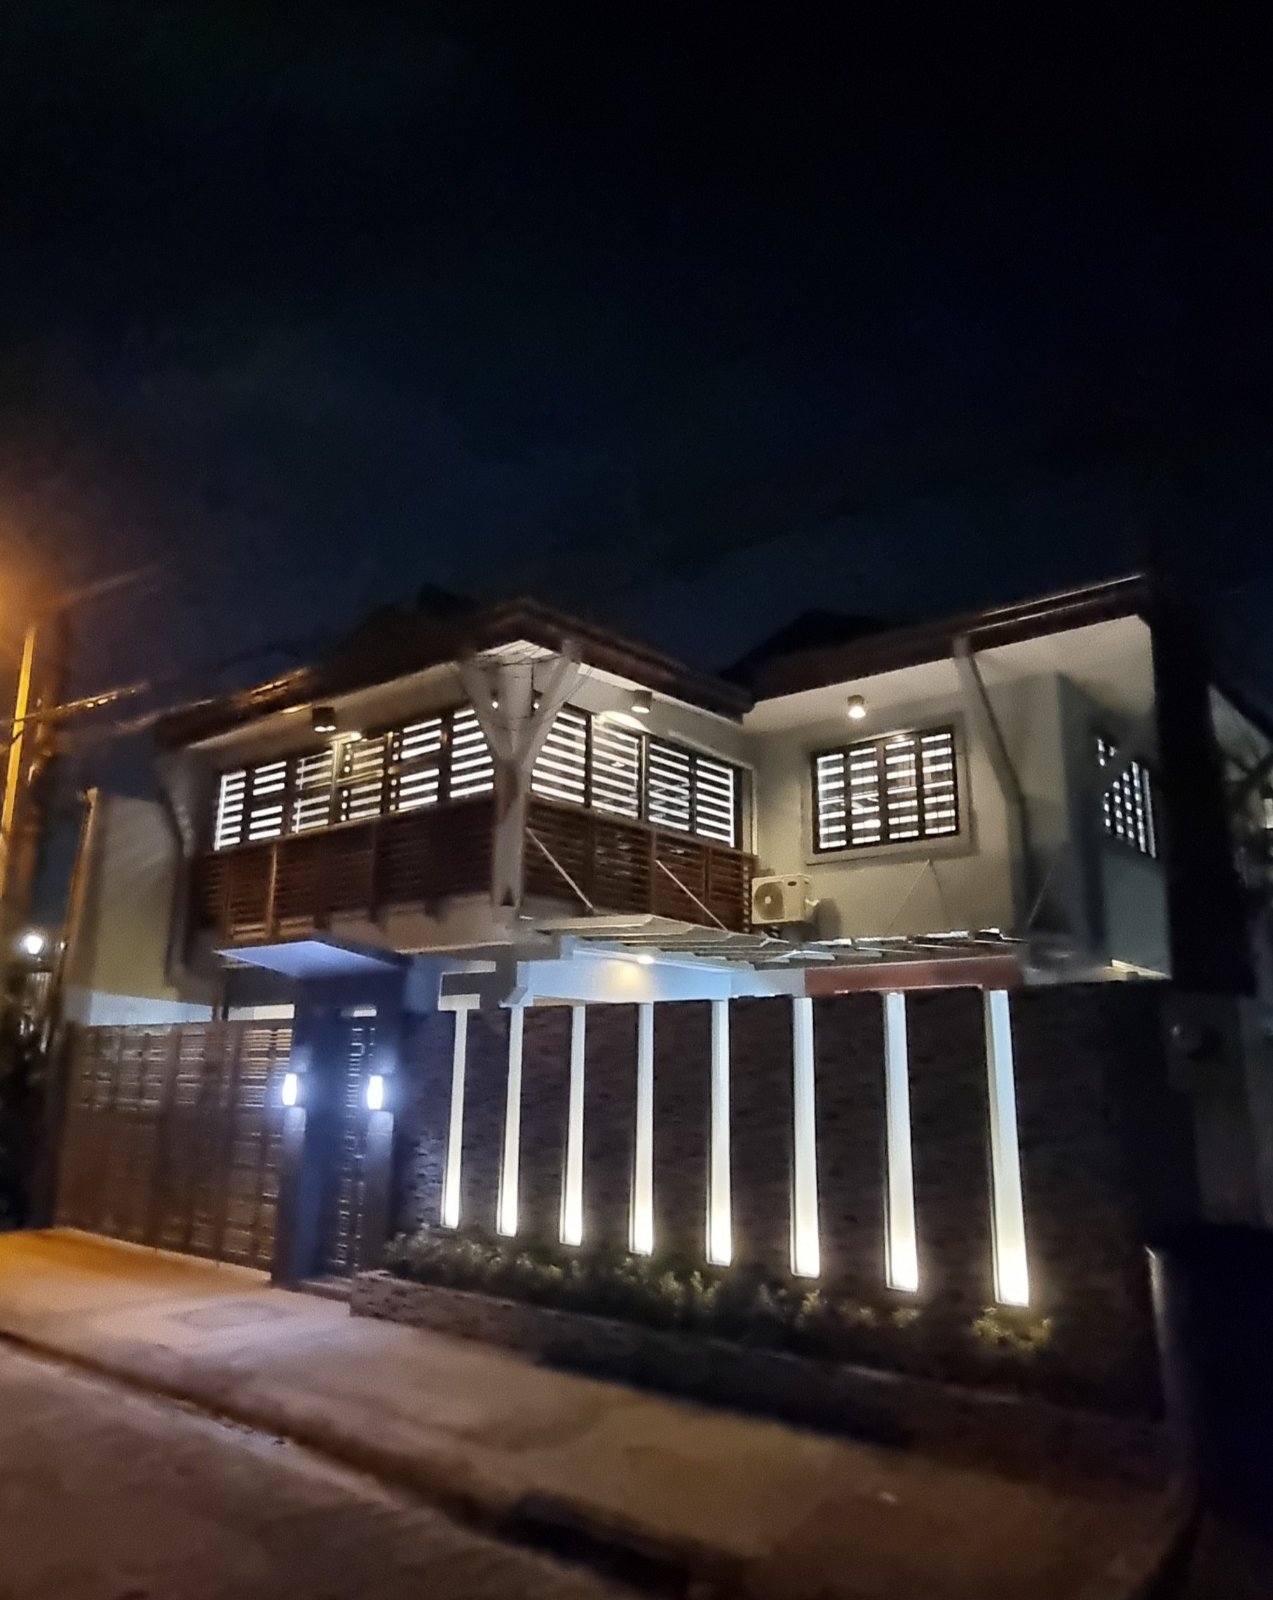 Illuminating3-BedroomHouseforSaleinFilinvestEast,Cainta,Rizal-1.jpg